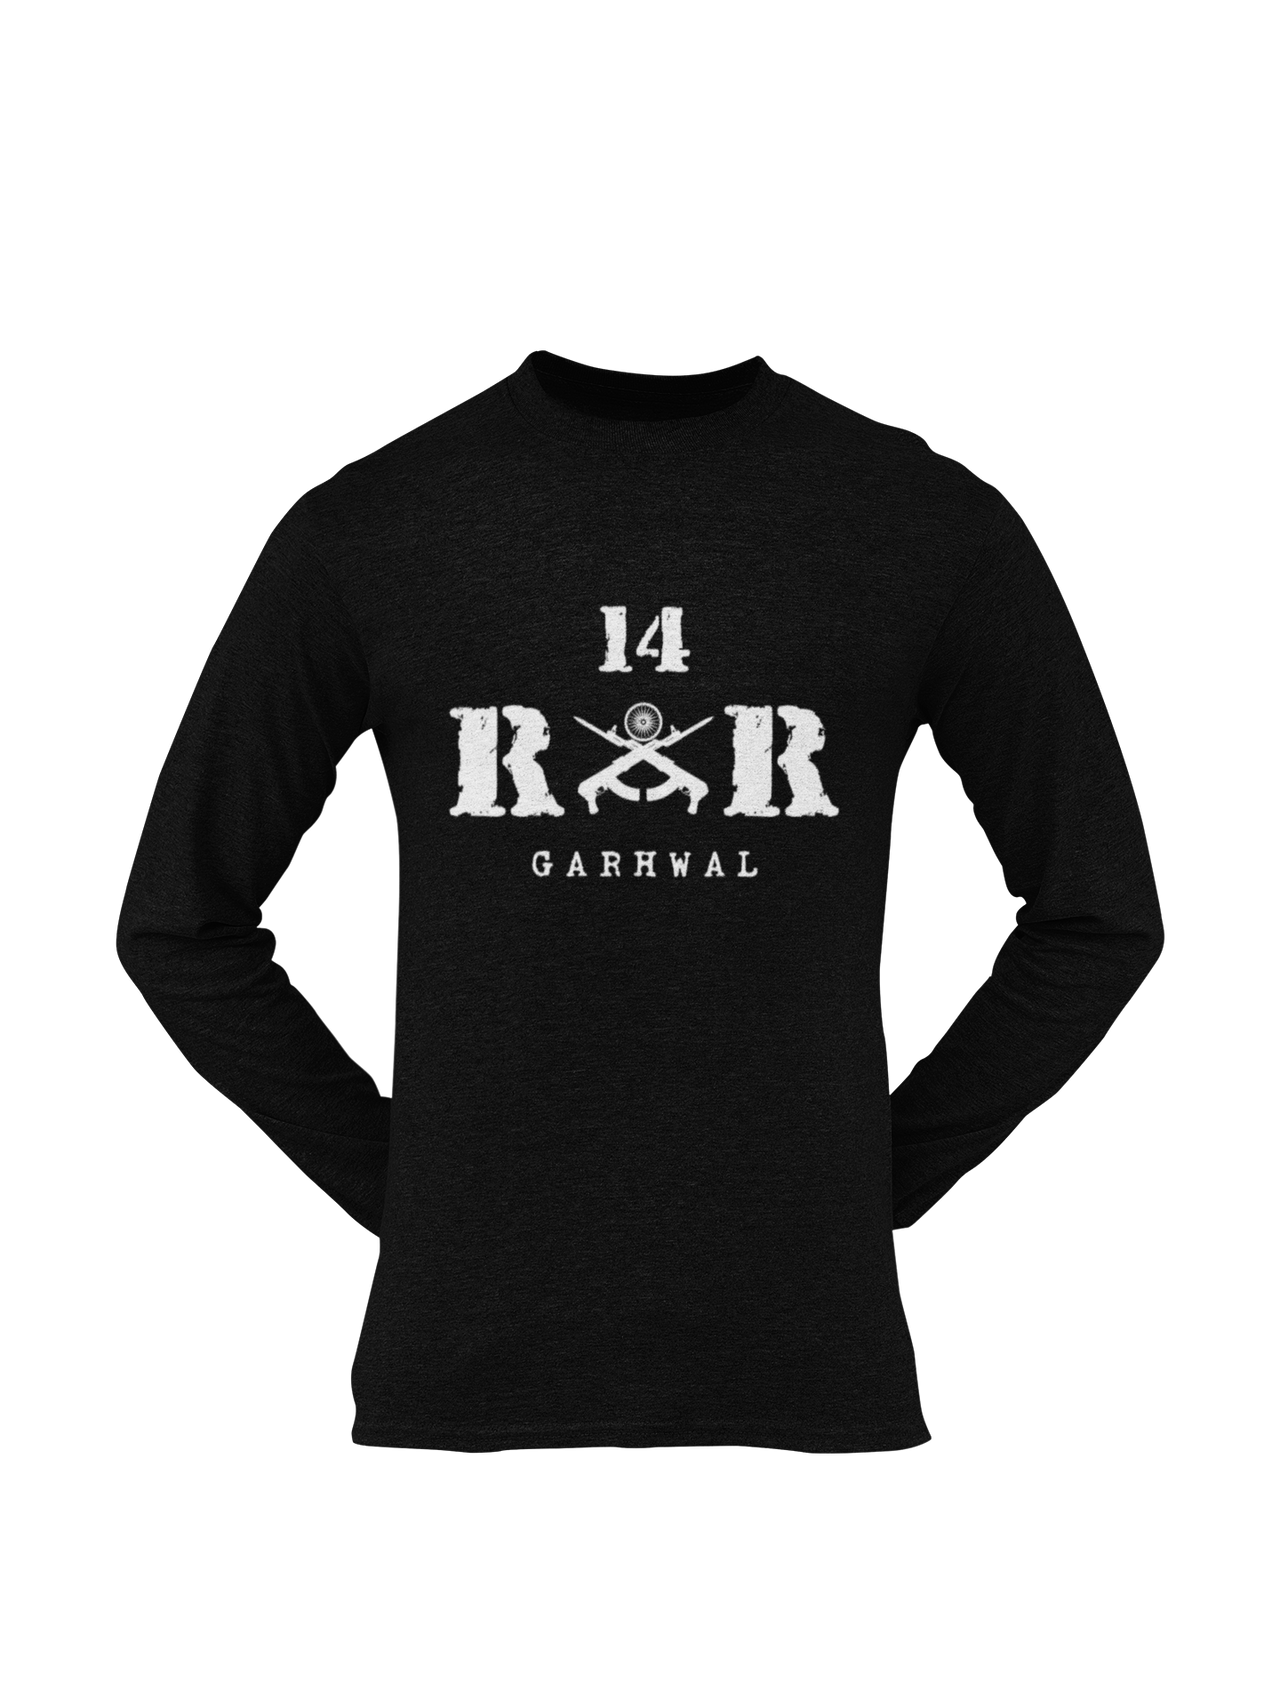 Rashtriya Rifles T-shirt - 14 RR Garhwal (Men)